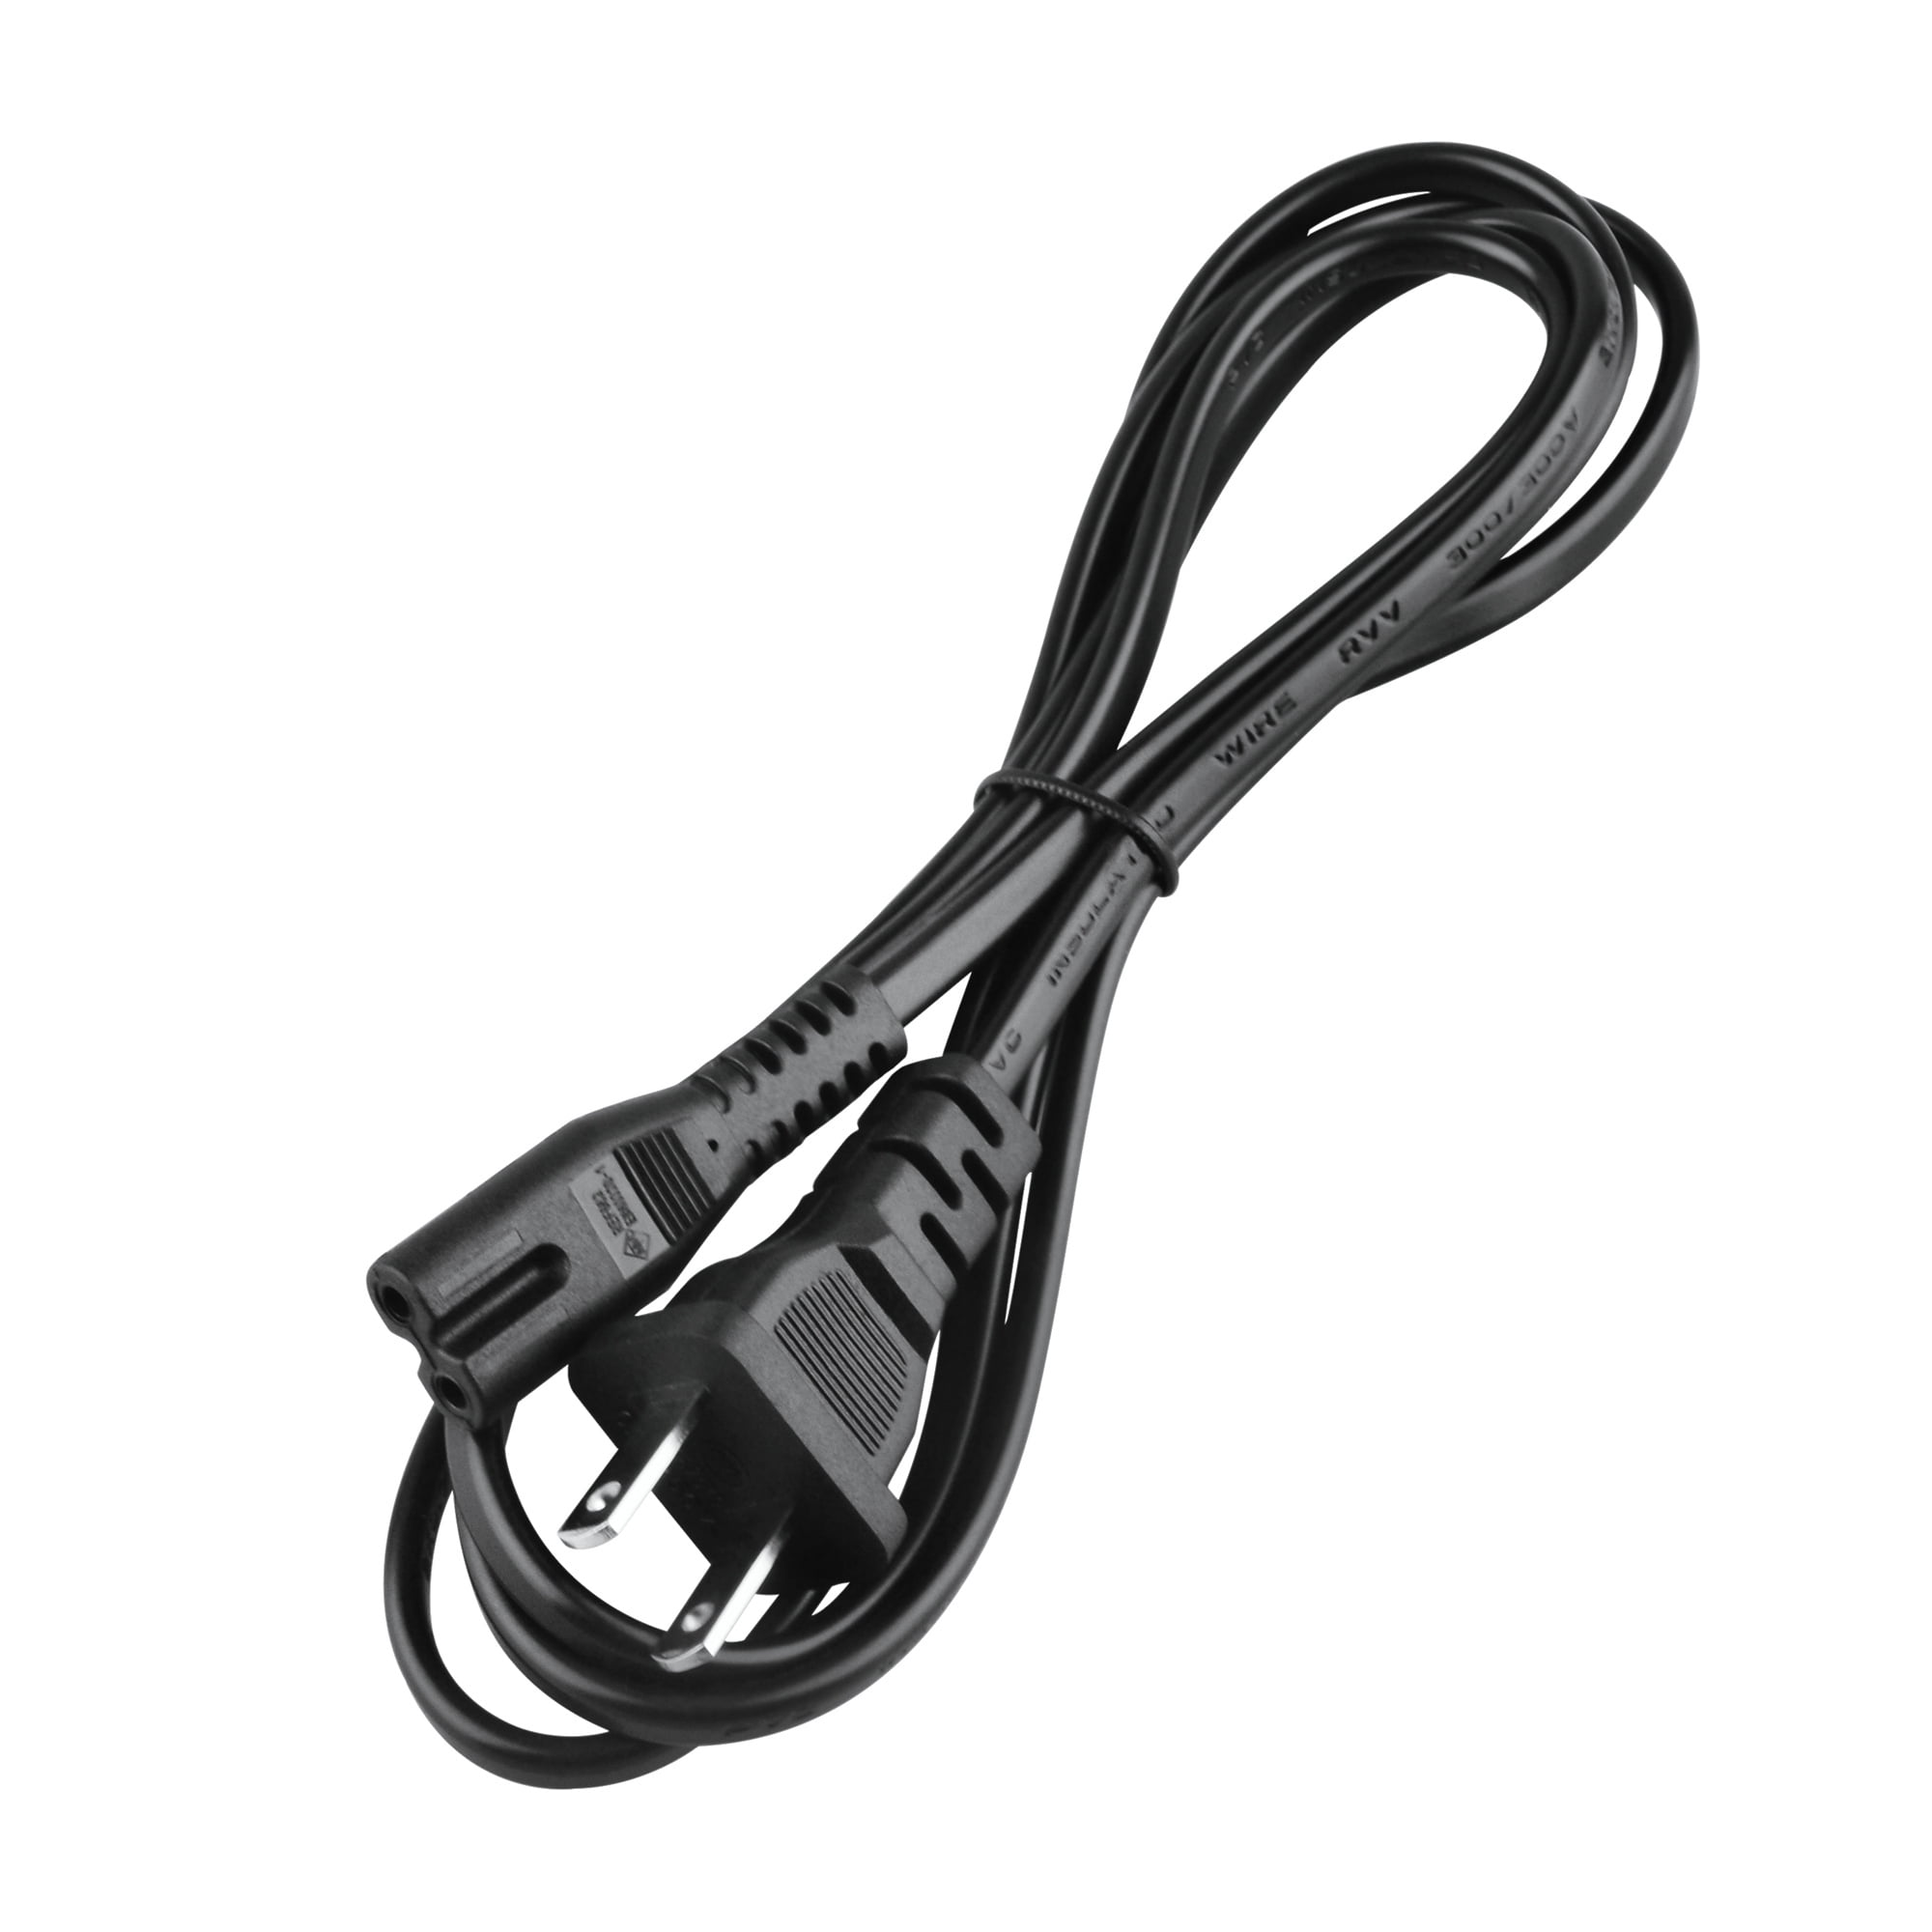 USB Cable For: Epson XP-610 Printer (10 Feet) – ReadyPlug